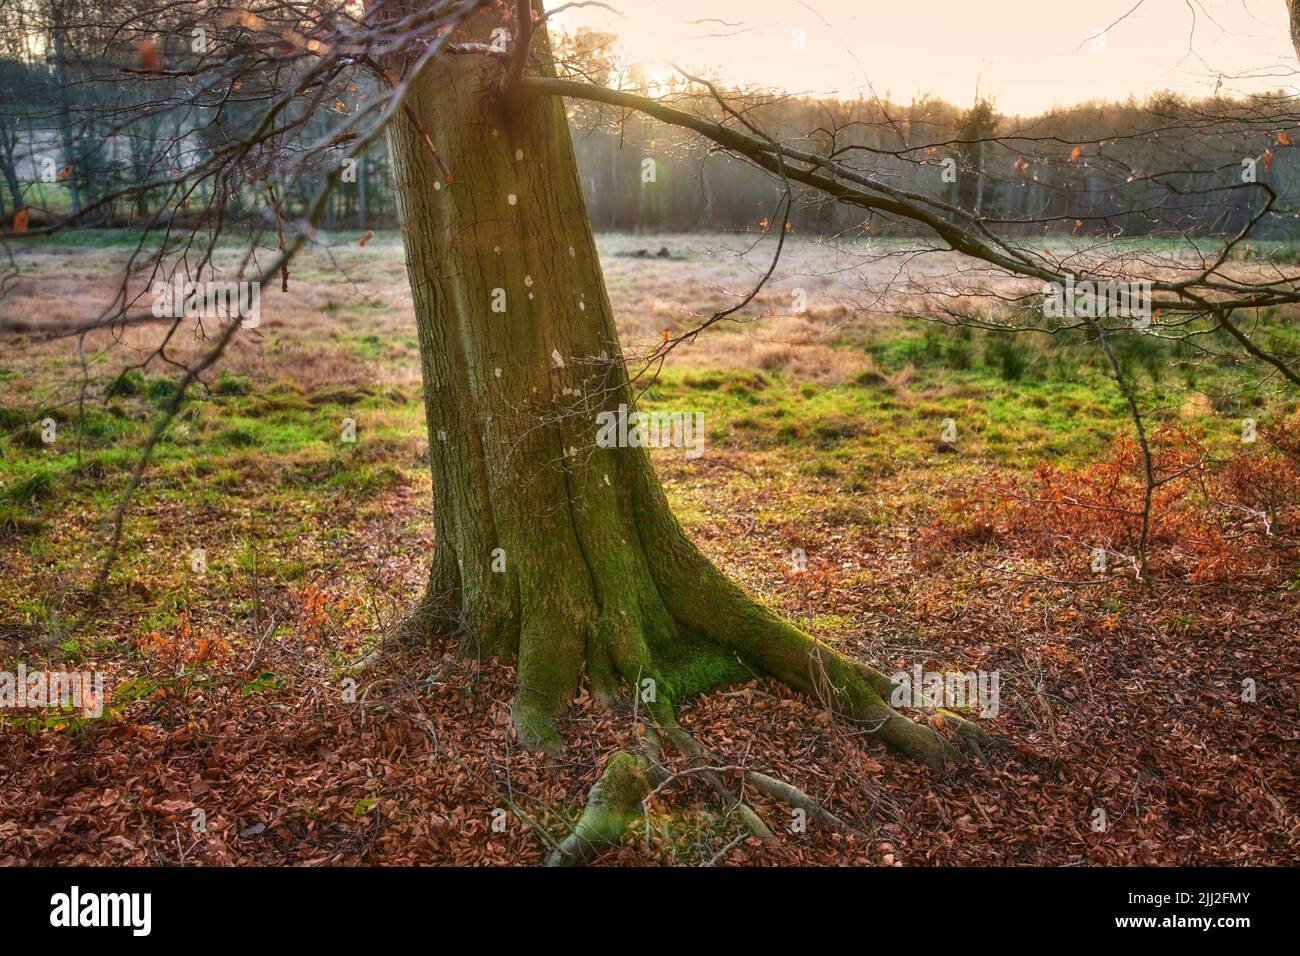 Schöner isolierter Baum im Wald mit offenem Gras und Bäumen im Hintergrund. Landschaft eines entspannten alten Baumes draußen im Wald mit braunen Blättern Stockfoto